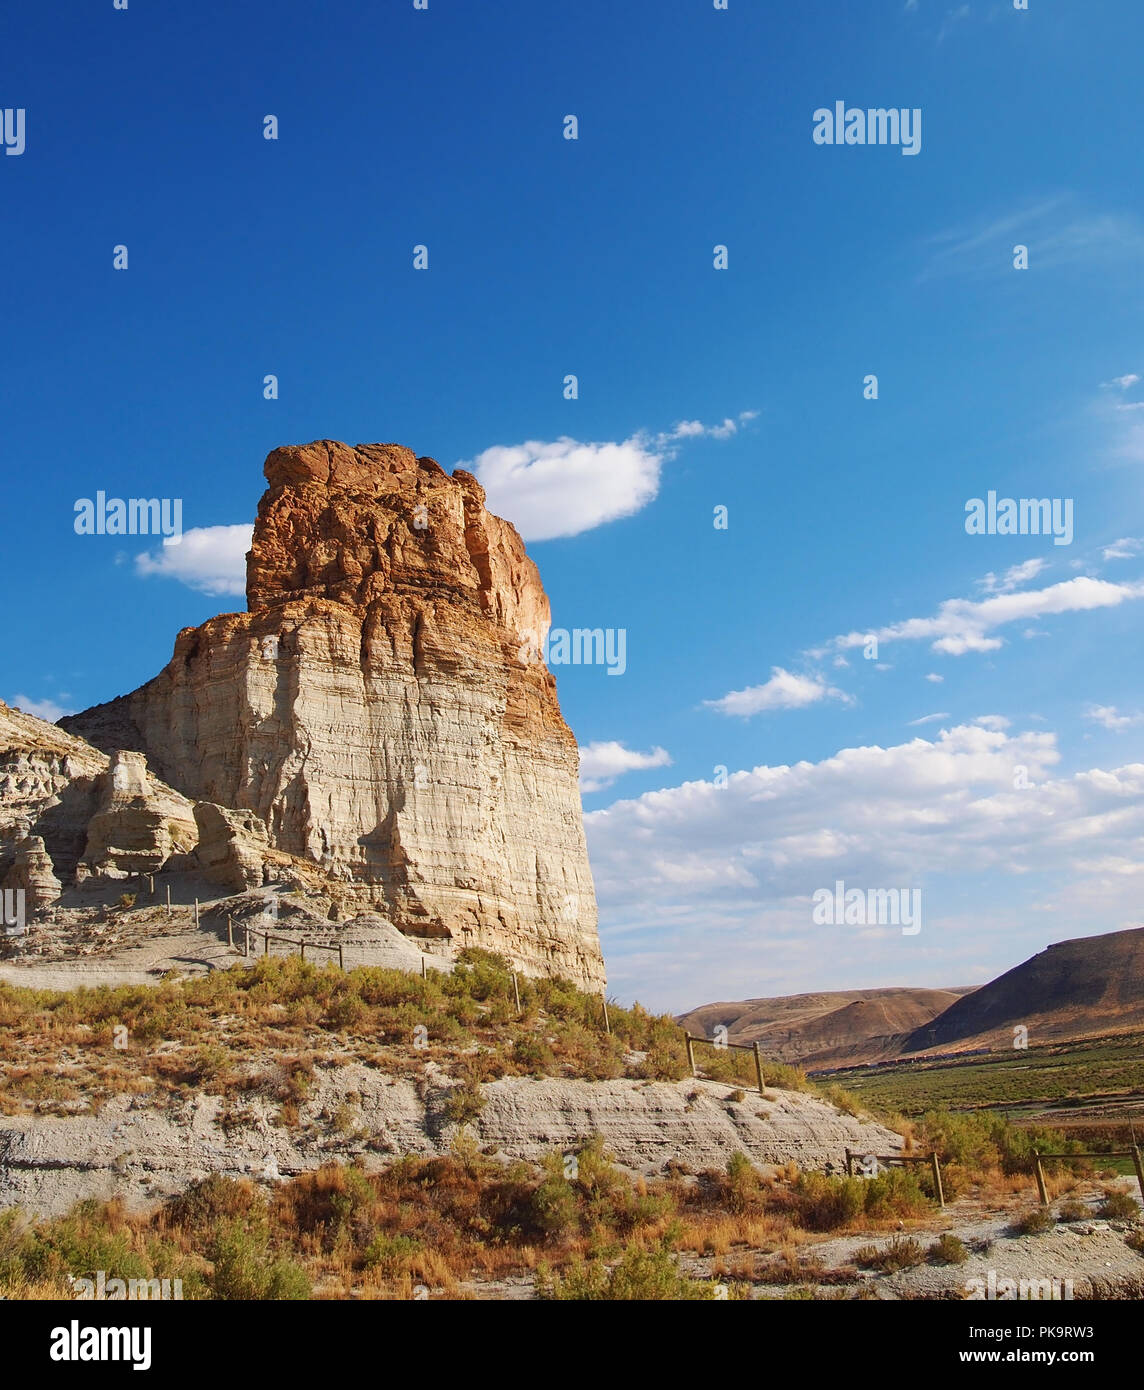 Une grande butte se dresse au-dessus d'un paysage de roches érodées et de l'armoise, avec des collines en arrière-plan, dans la région de désert rouge du Wyoming. Banque D'Images